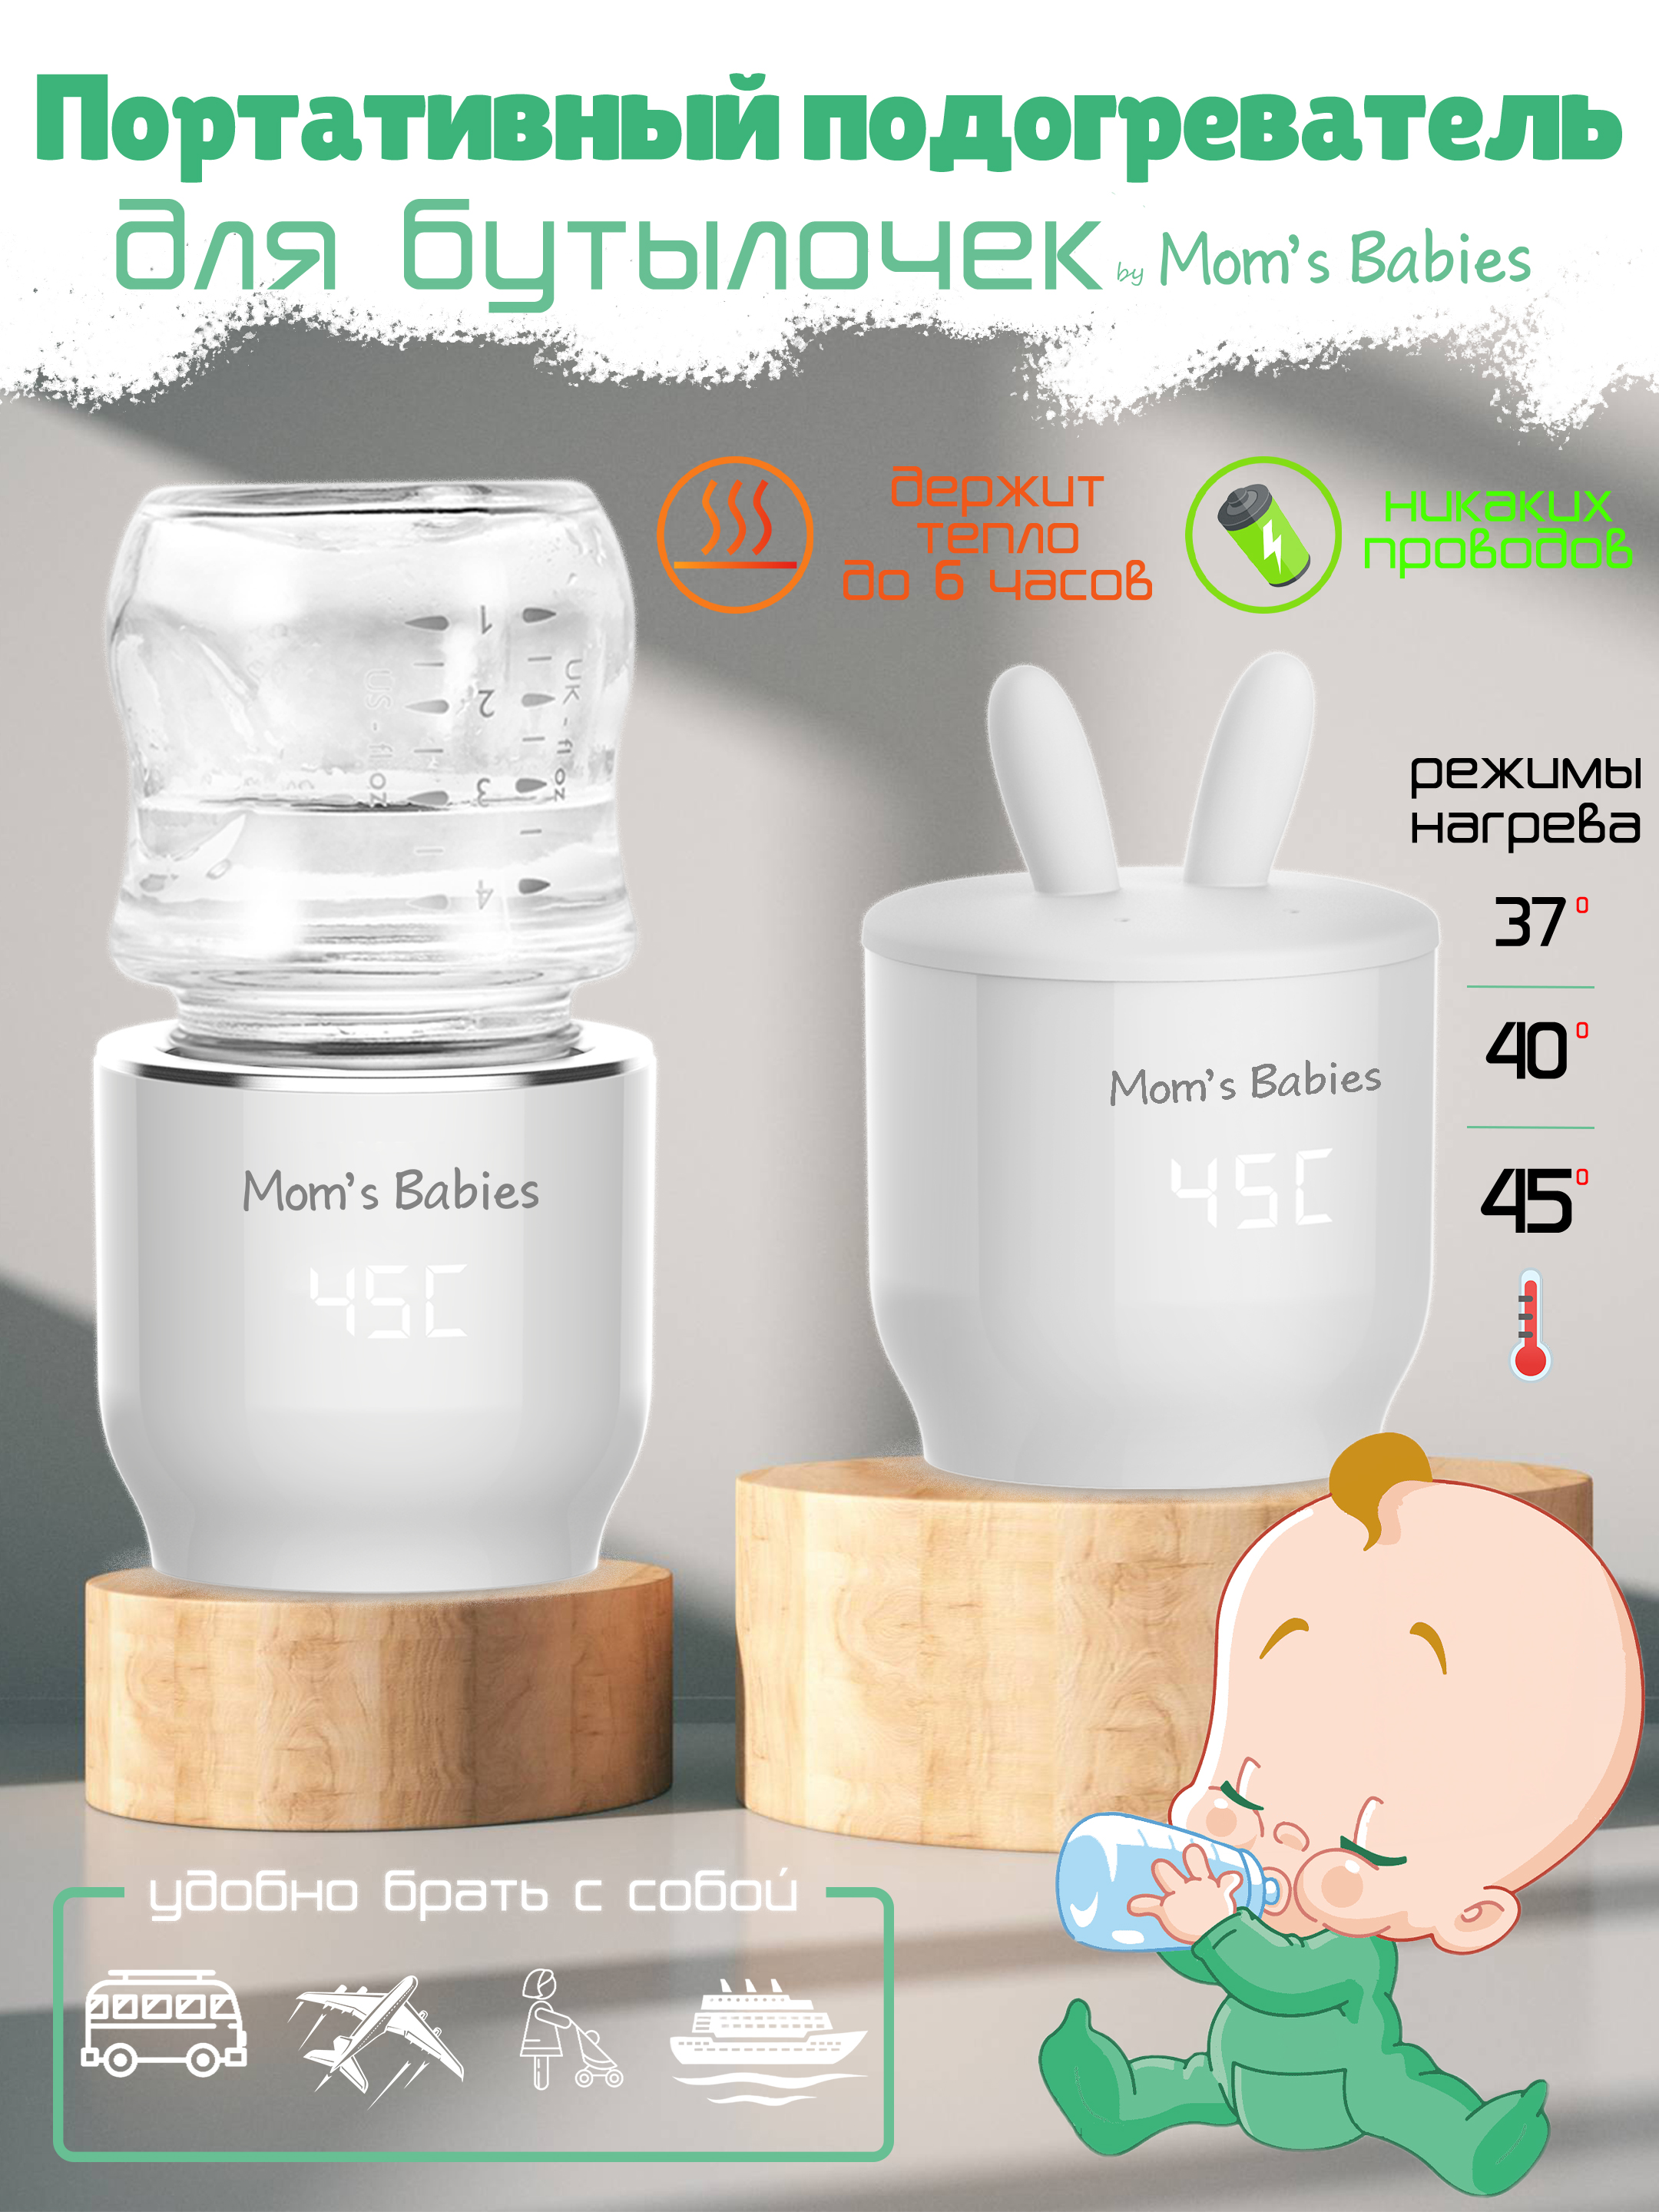 Портативный подогреватель Mom's Babies FS01 для бутылочек и детского питания белый портативный подогреватель solmax w97201 для бутылочек и детского питания белый